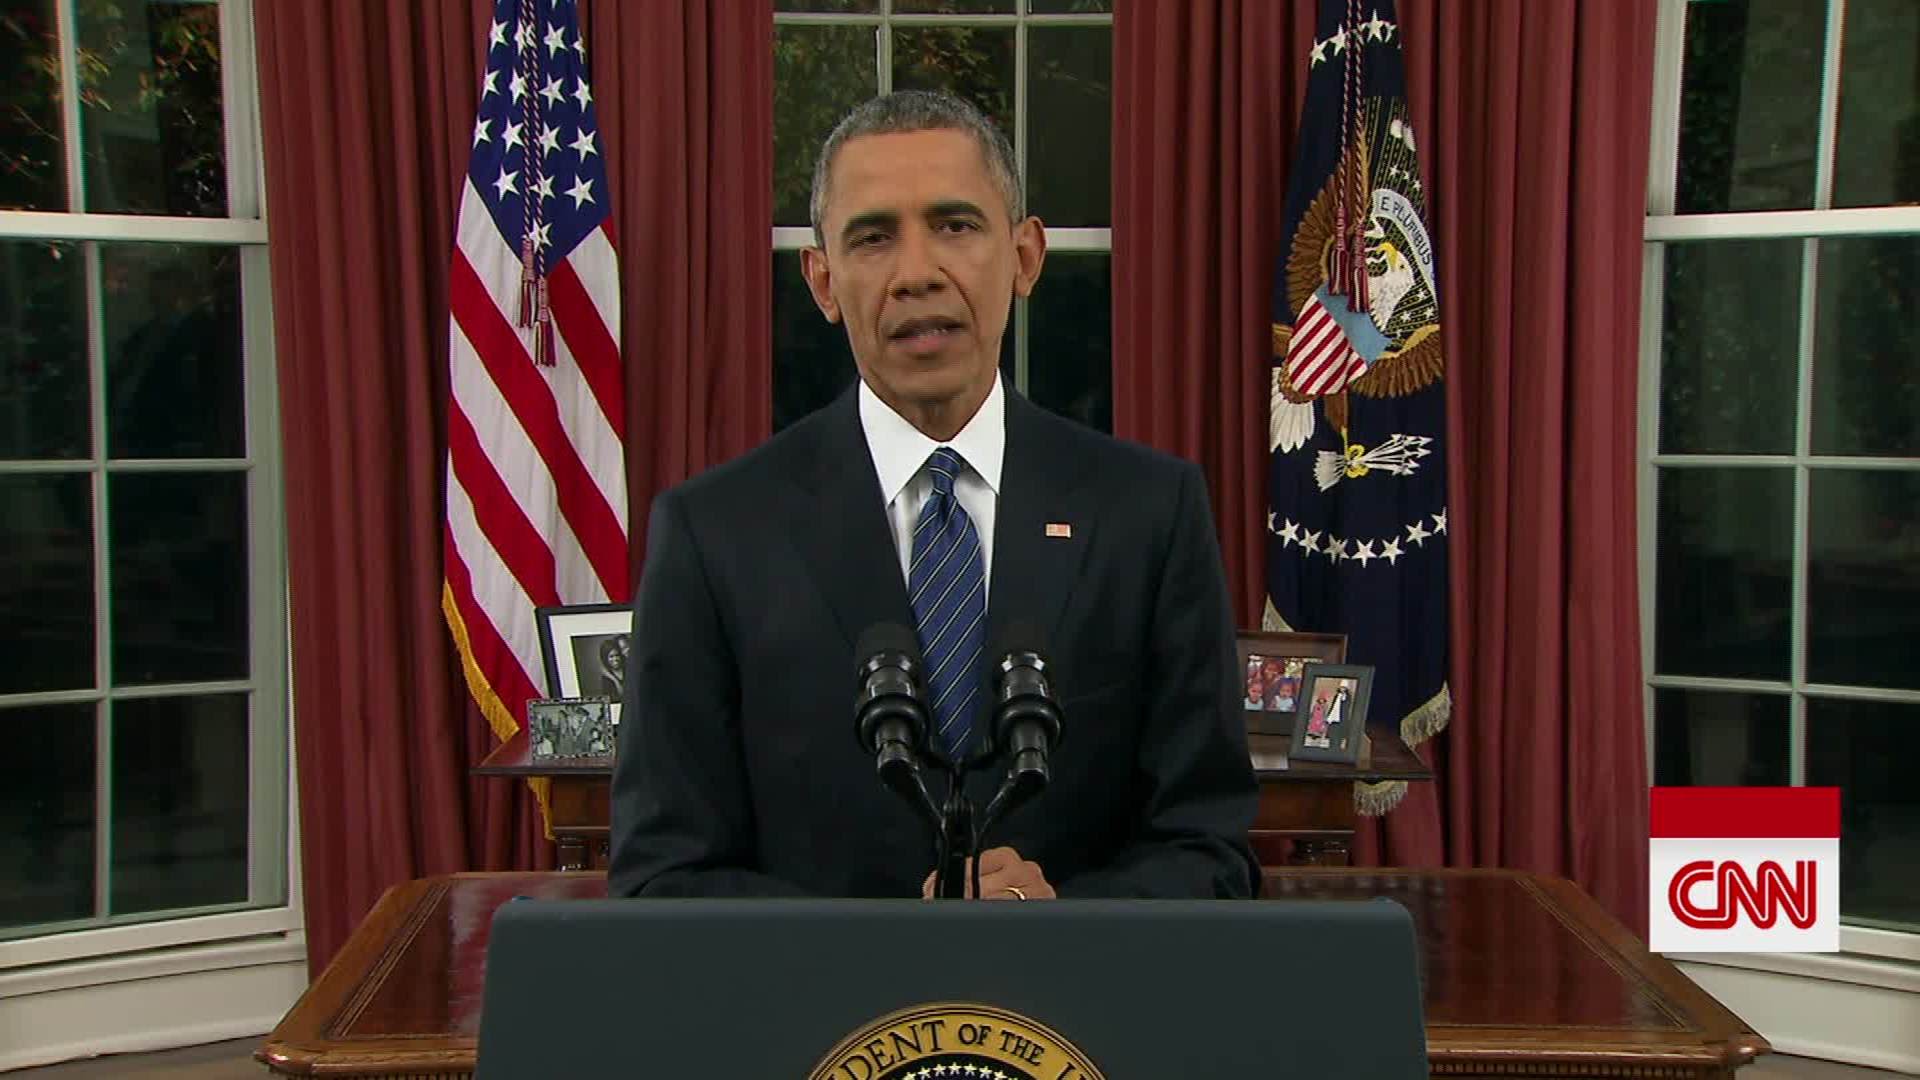 President Obama's full Oval Office address | CNN